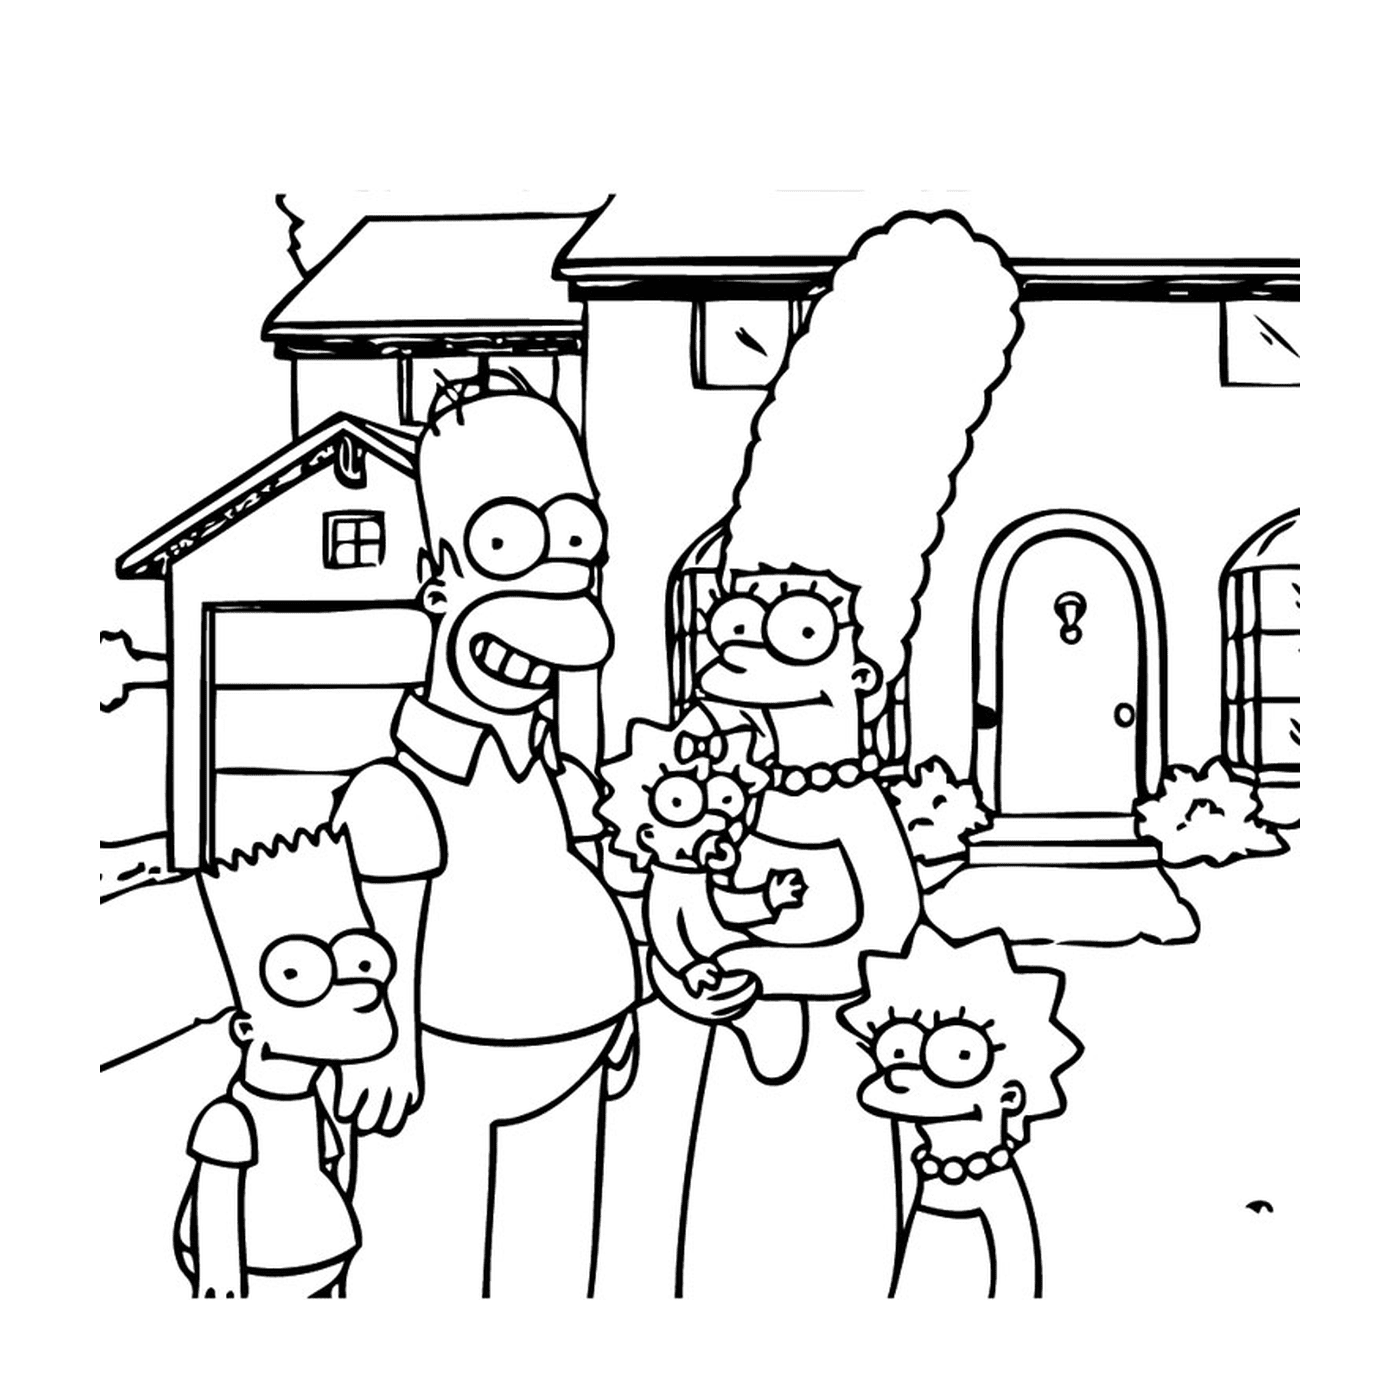  Симпсоны с семьей 